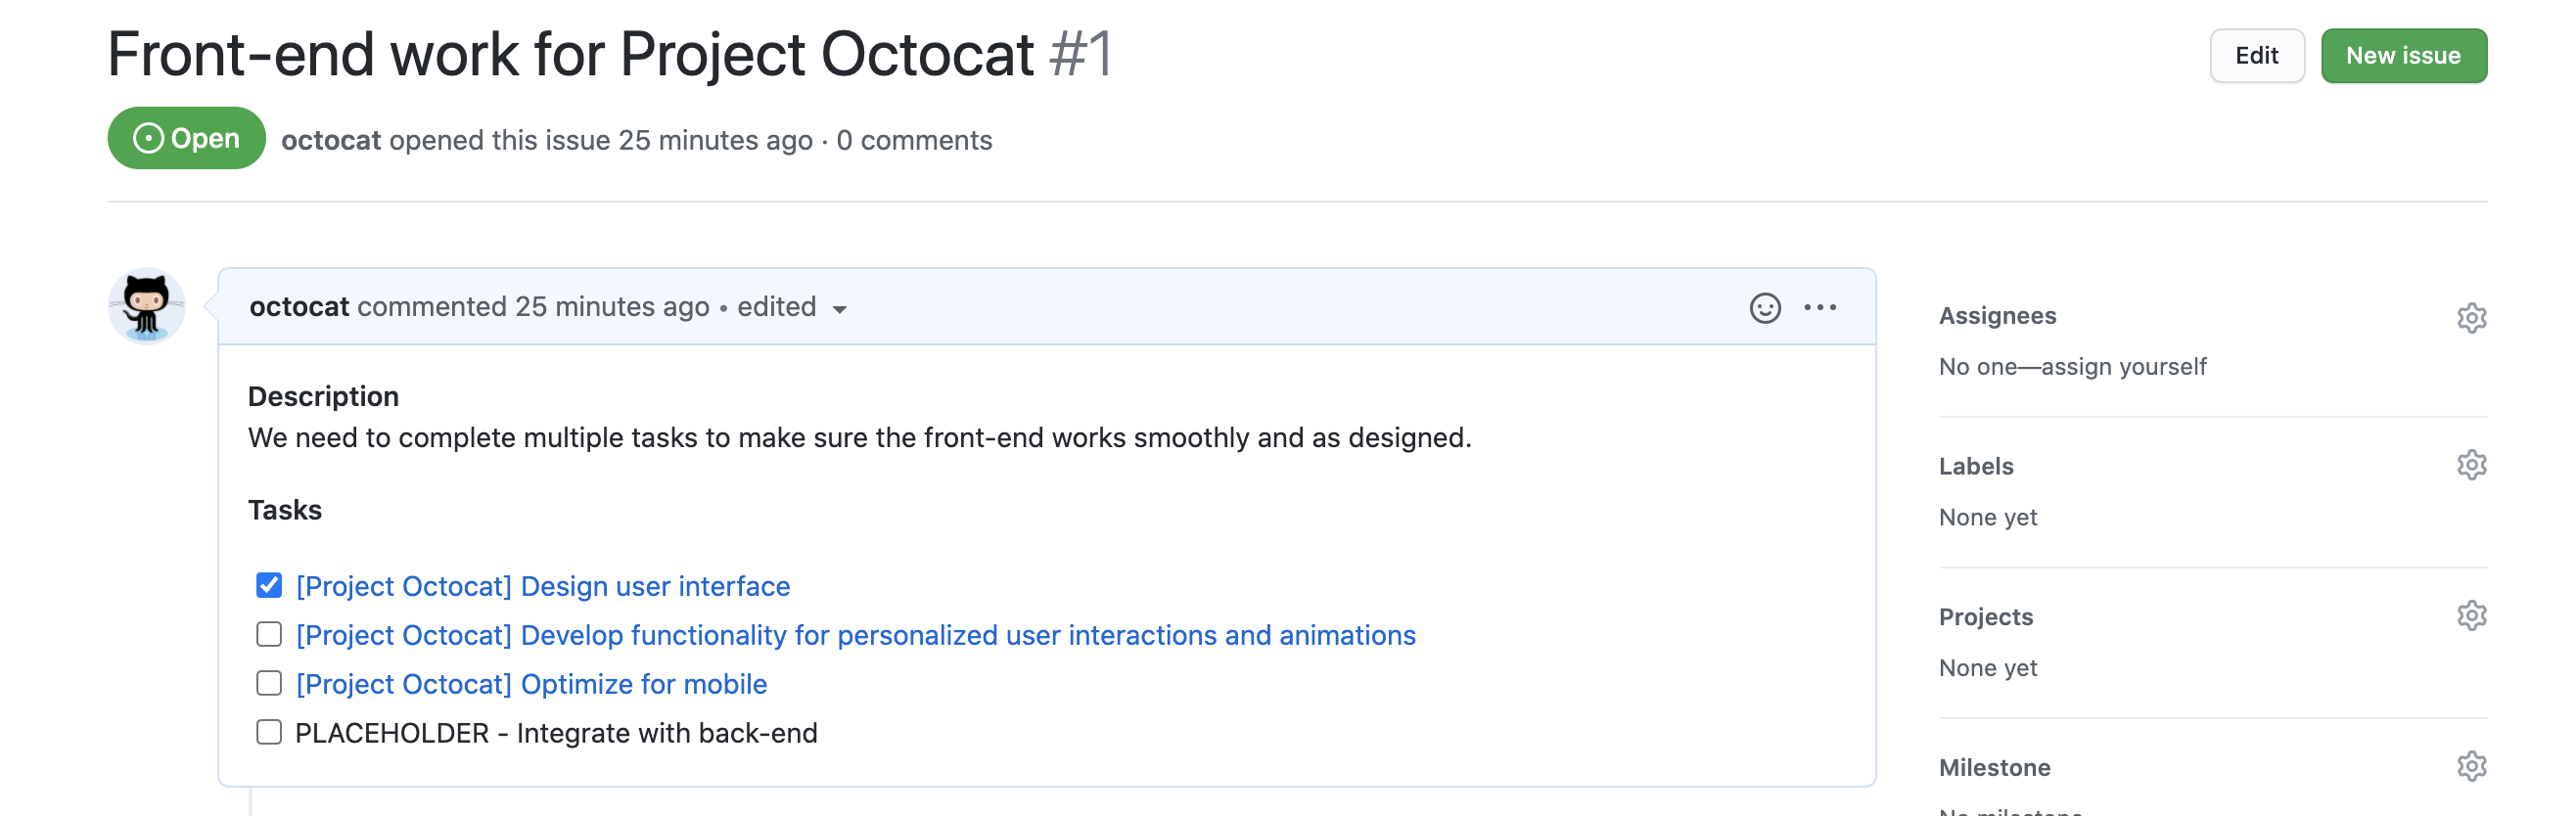 名为“Octocat 项目前端工作”的议题的屏幕截图。 议题正文包含一个任务列表，每个议题链接前面都有一个复选框。